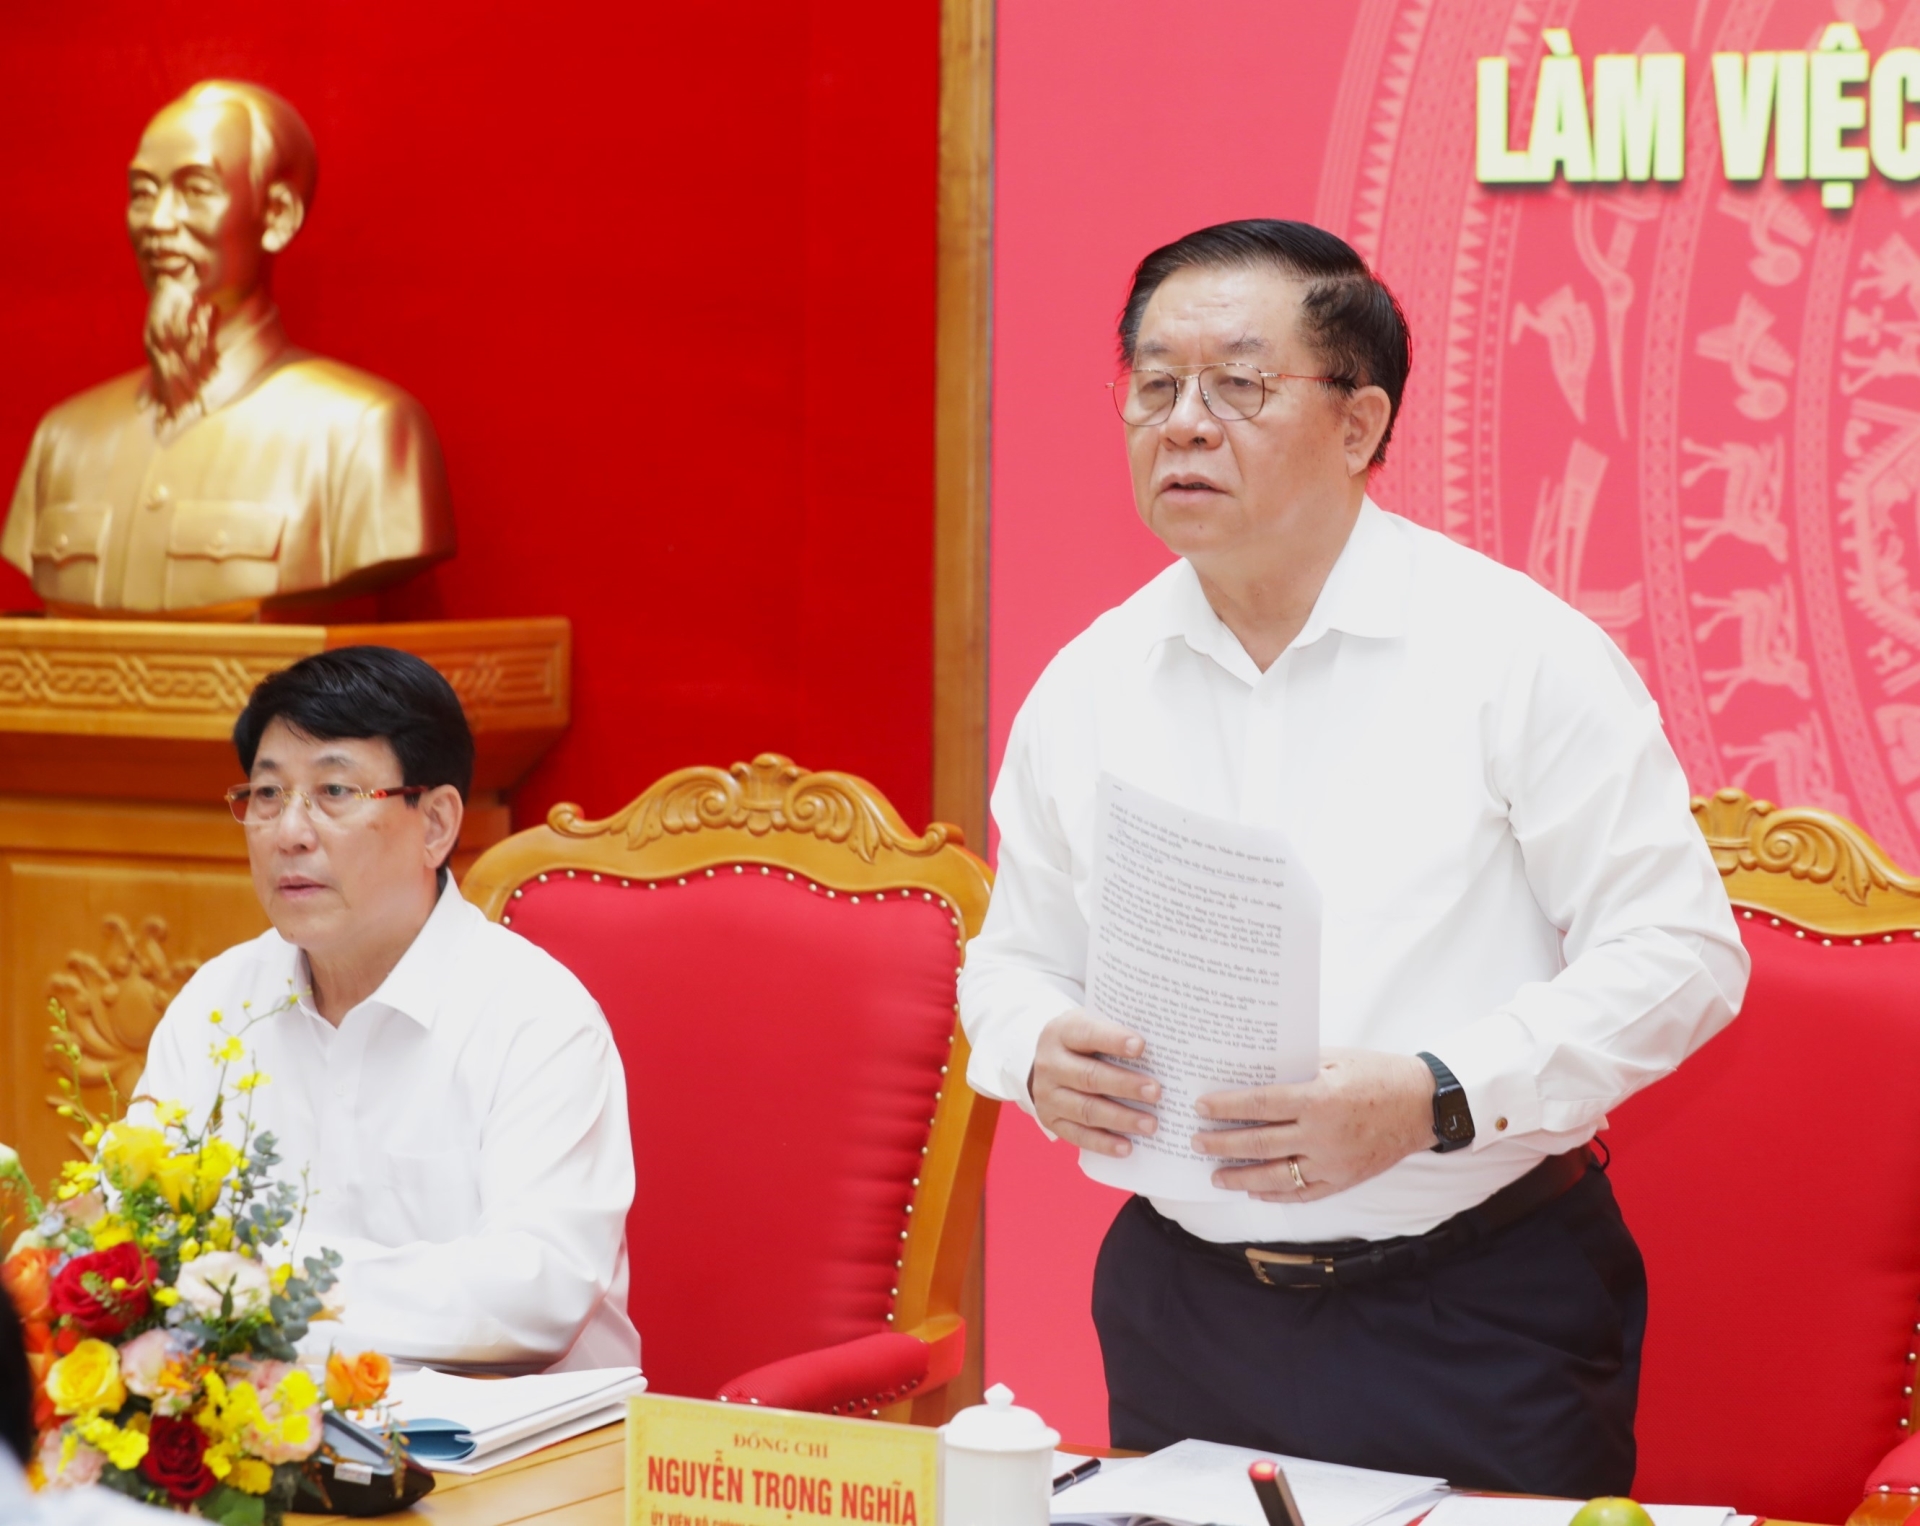 Đồng chí Nguyễn Trọng Nghĩa, Ủy viên Bộ Chính trị, Bí thư Trung ương Đảng, Trưởng ban Tuyên giáo Trung ương phát biểu tại buổi làm việc.